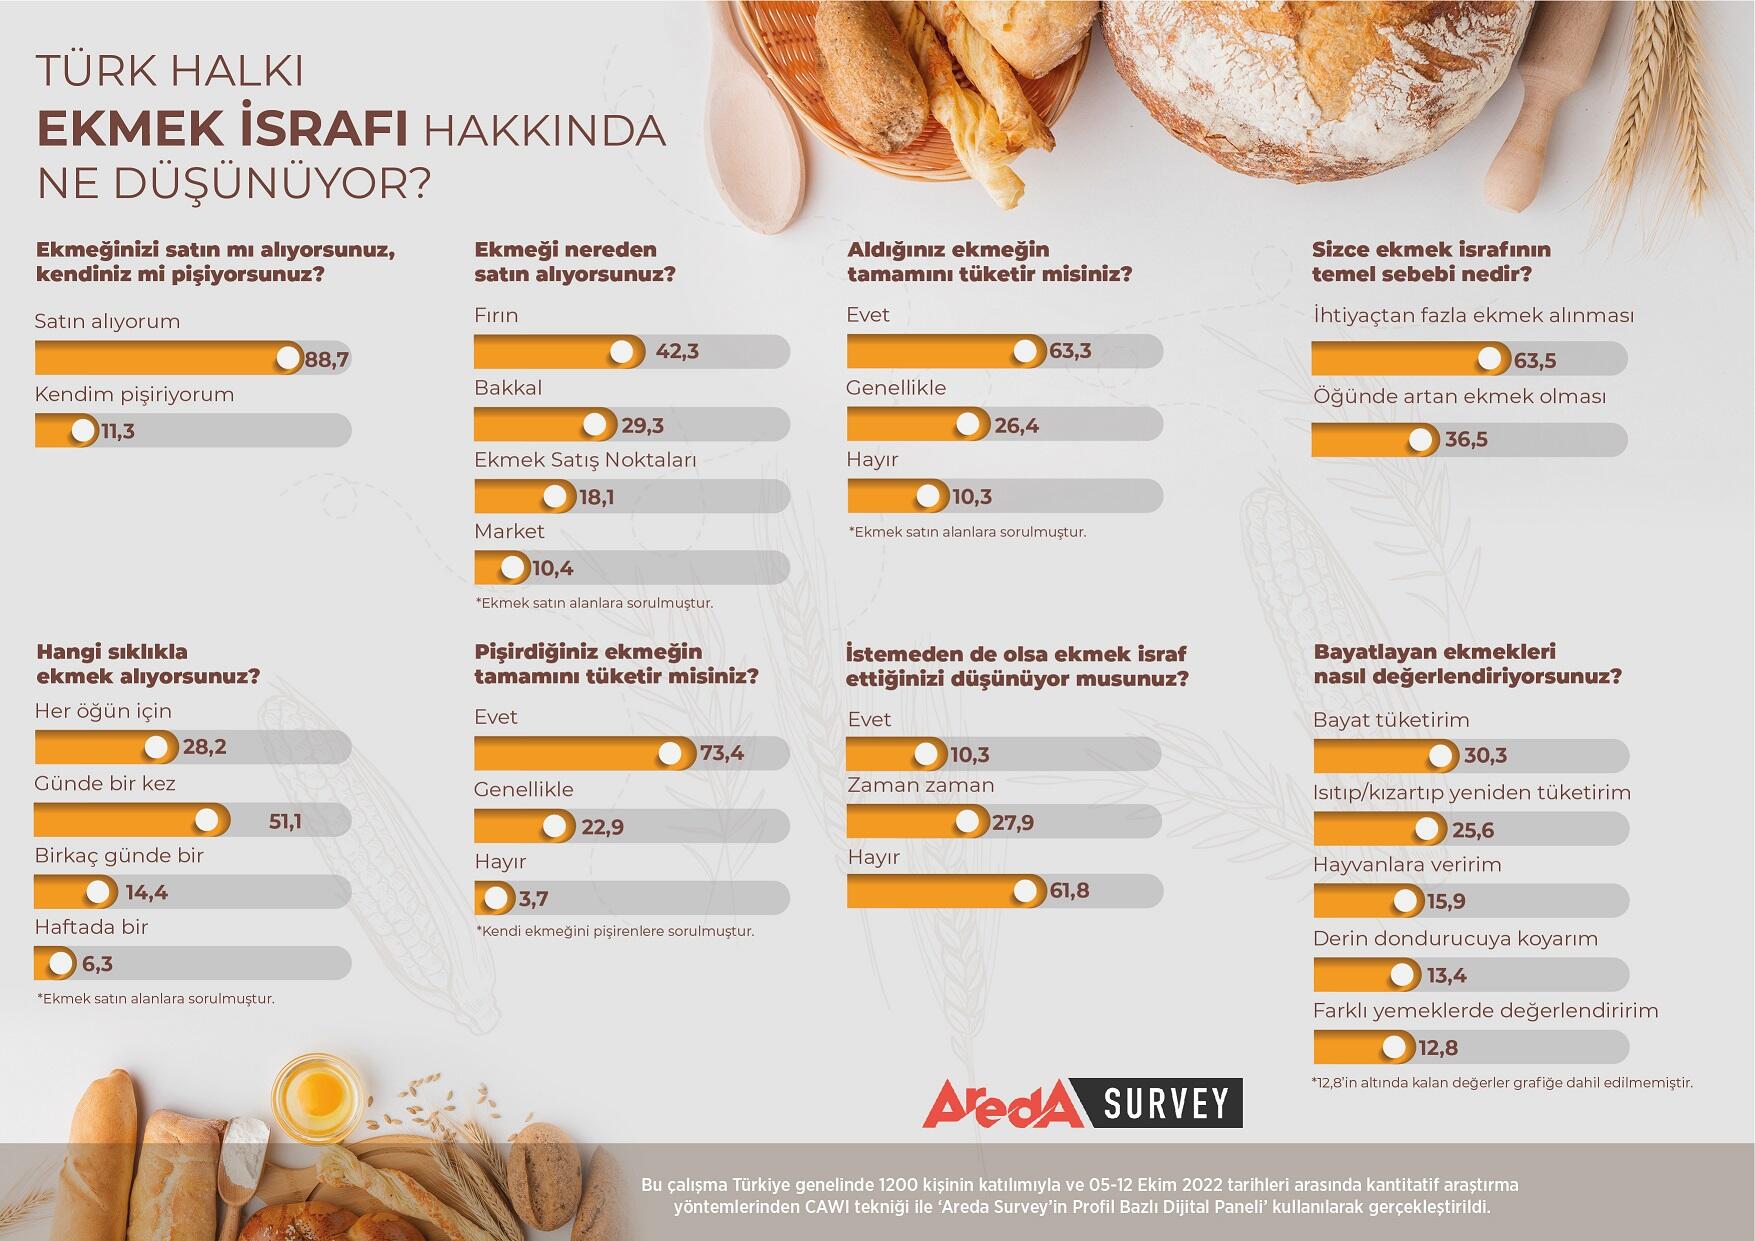 Araştırma: Türk halkının yüzde 61,8’i ekmeğini israf etmiyor